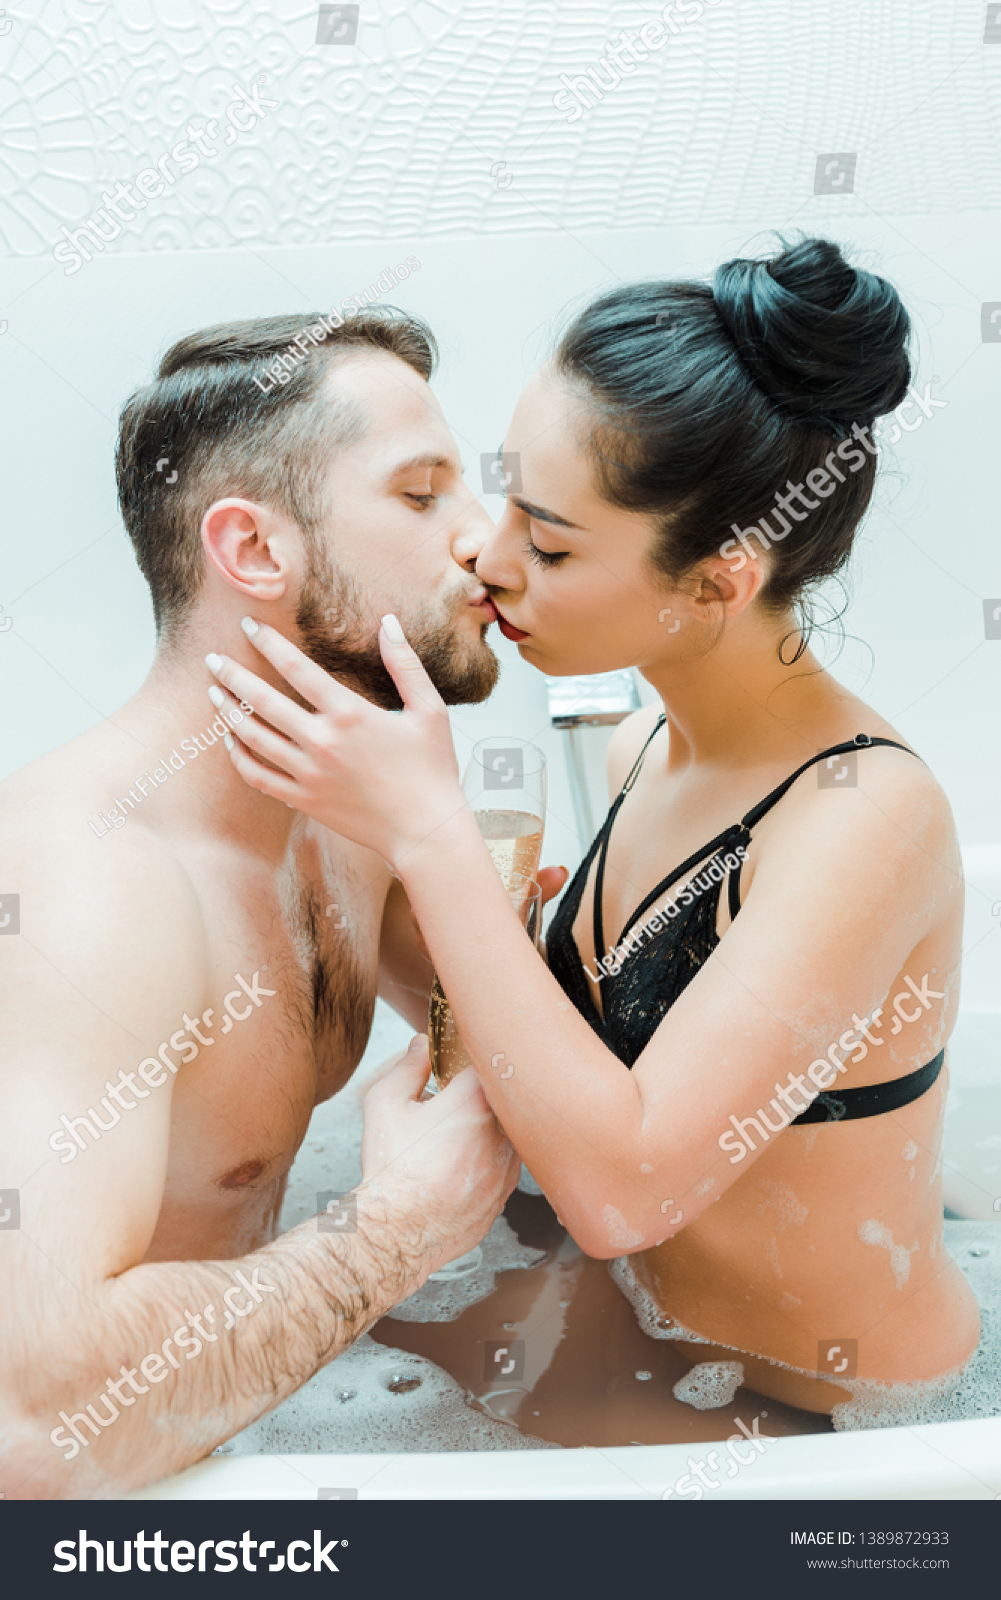 akash dalwadi add photo hot women kissing men